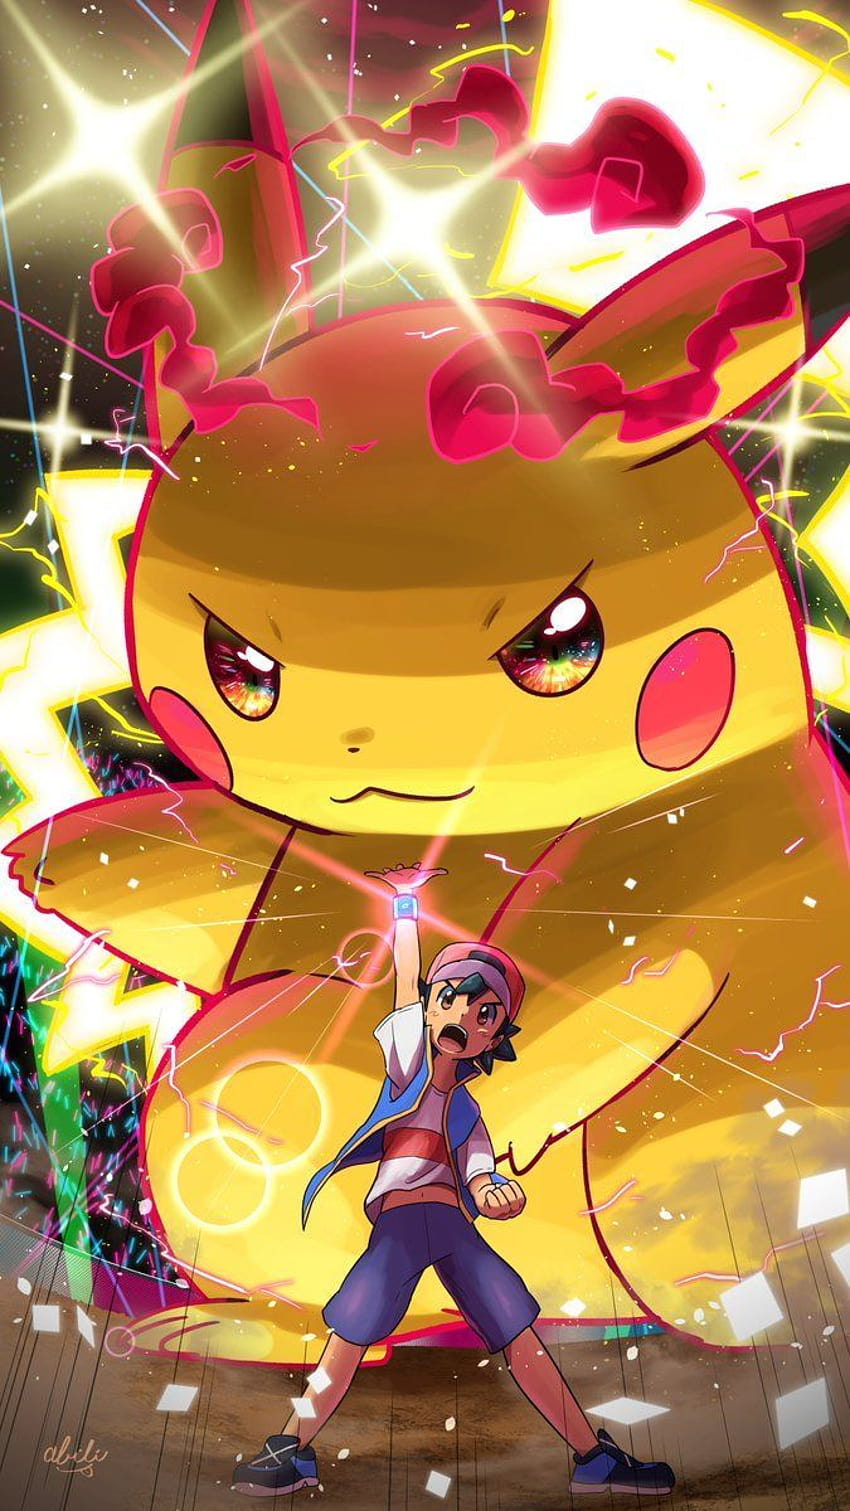 Gigantamax Pikachu: Được xem là hiện tượng trong thế giới của Pokemon, Gigantamax Pikachu là một điều khó tin mà bạn không thể bỏ lỡ. Với sức mạnh vượt trội và năng lực đáng kinh ngạc, Pikachu sẽ khiến bạn cảm thấy phấn khích vô cùng!